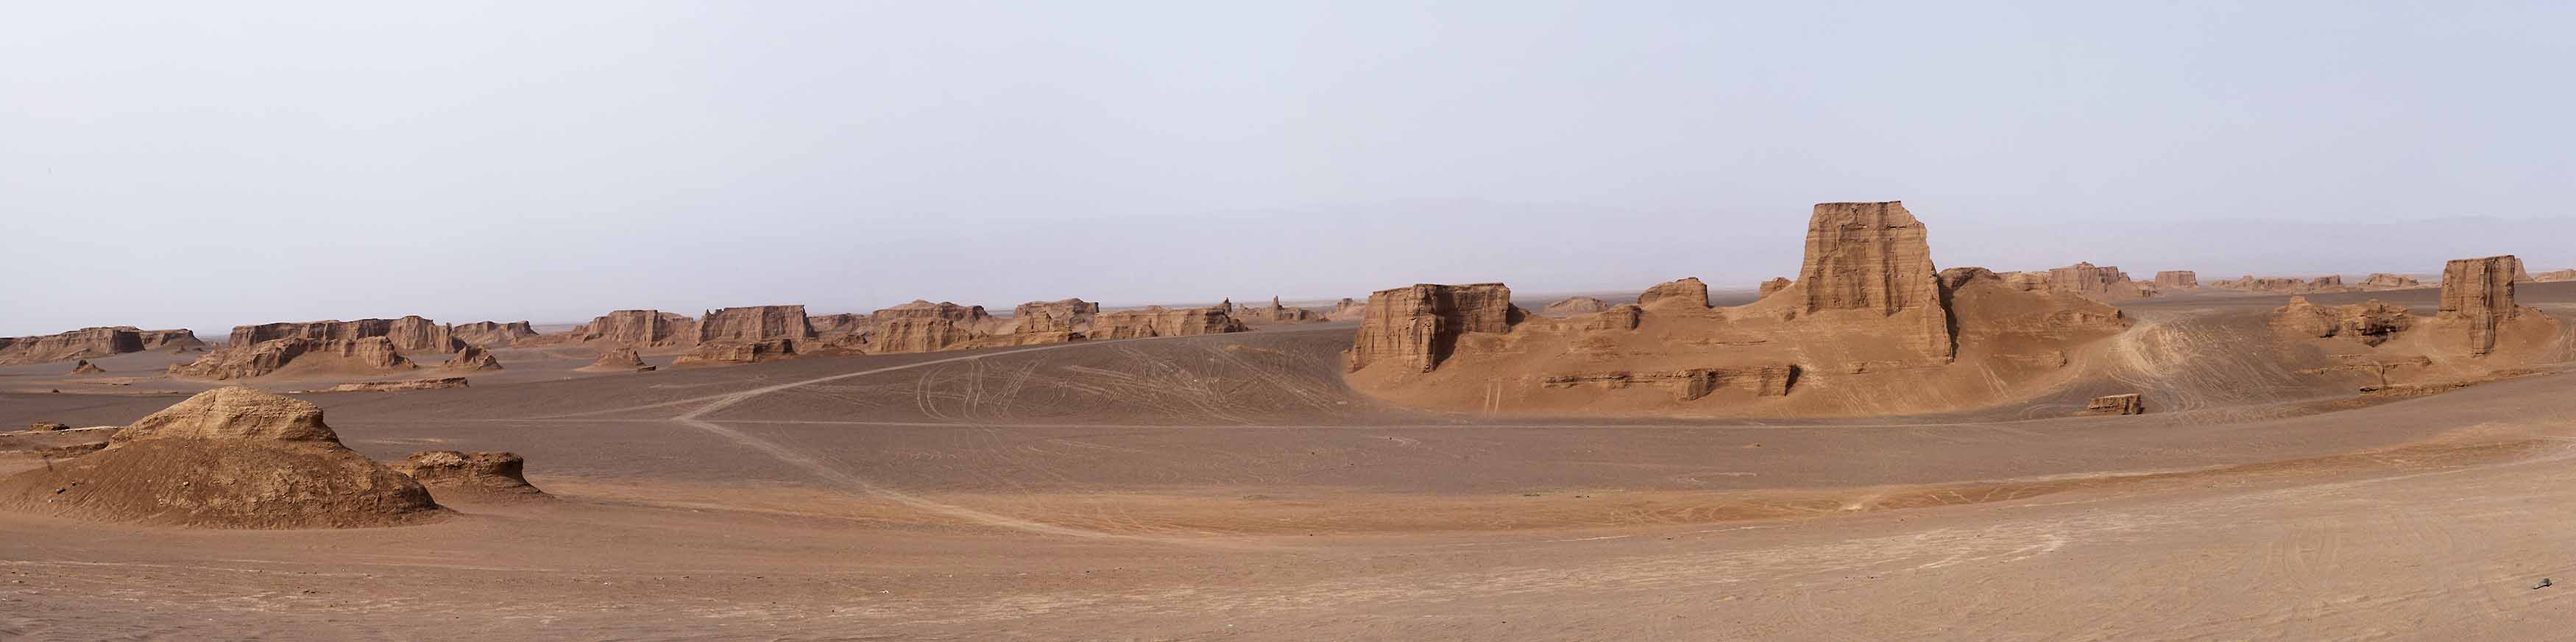 Wüste Lut Panorama